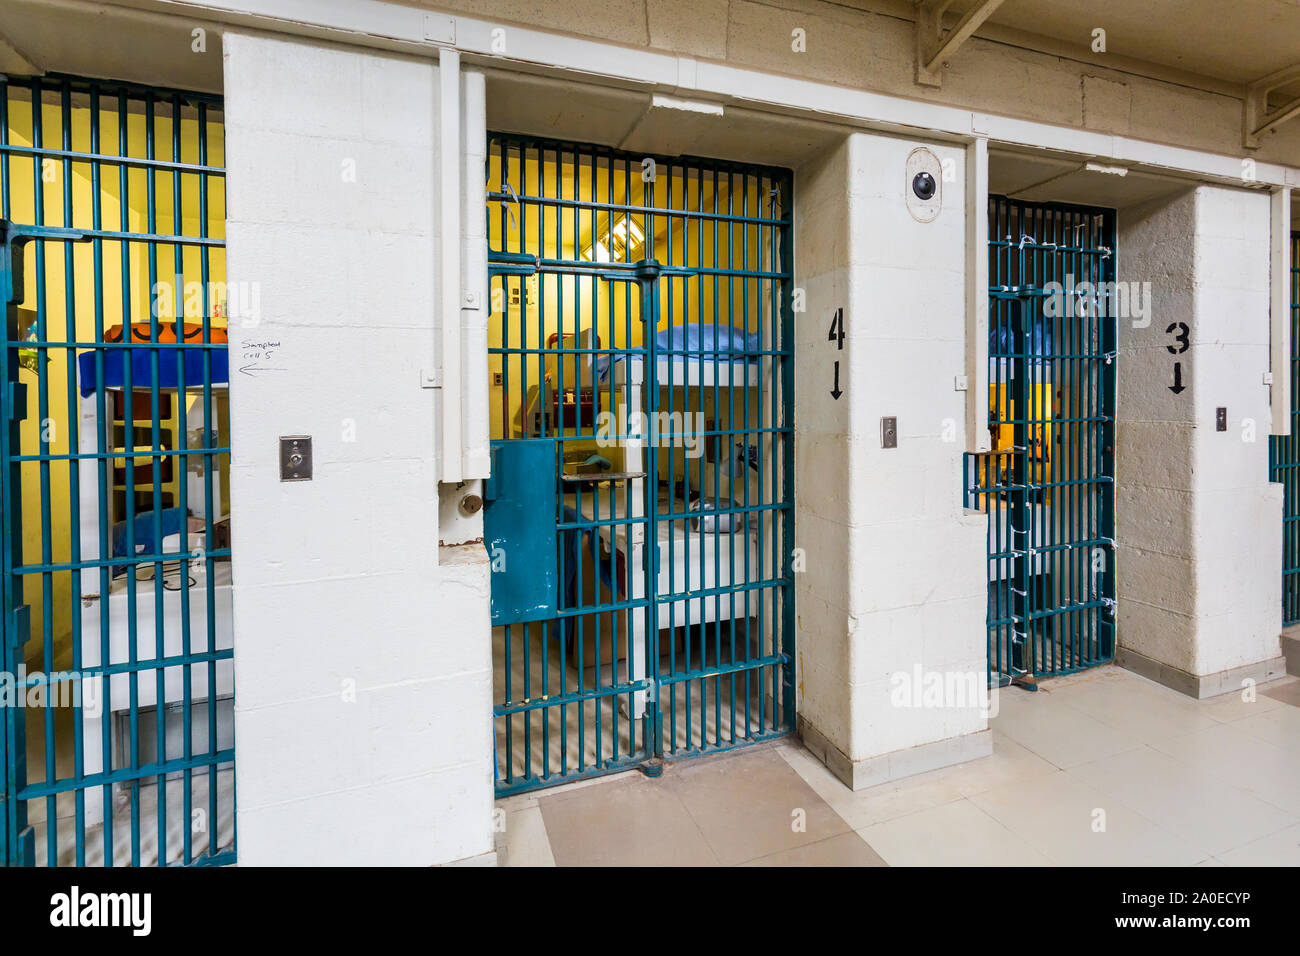 Row of Gail Cell Doors Kingston Penitentiary ein ehemaliges Gefängnis für maximale Sicherheit, das im Juni 1835 eröffnet und im September 2013 geschlossen wurde Stockfoto